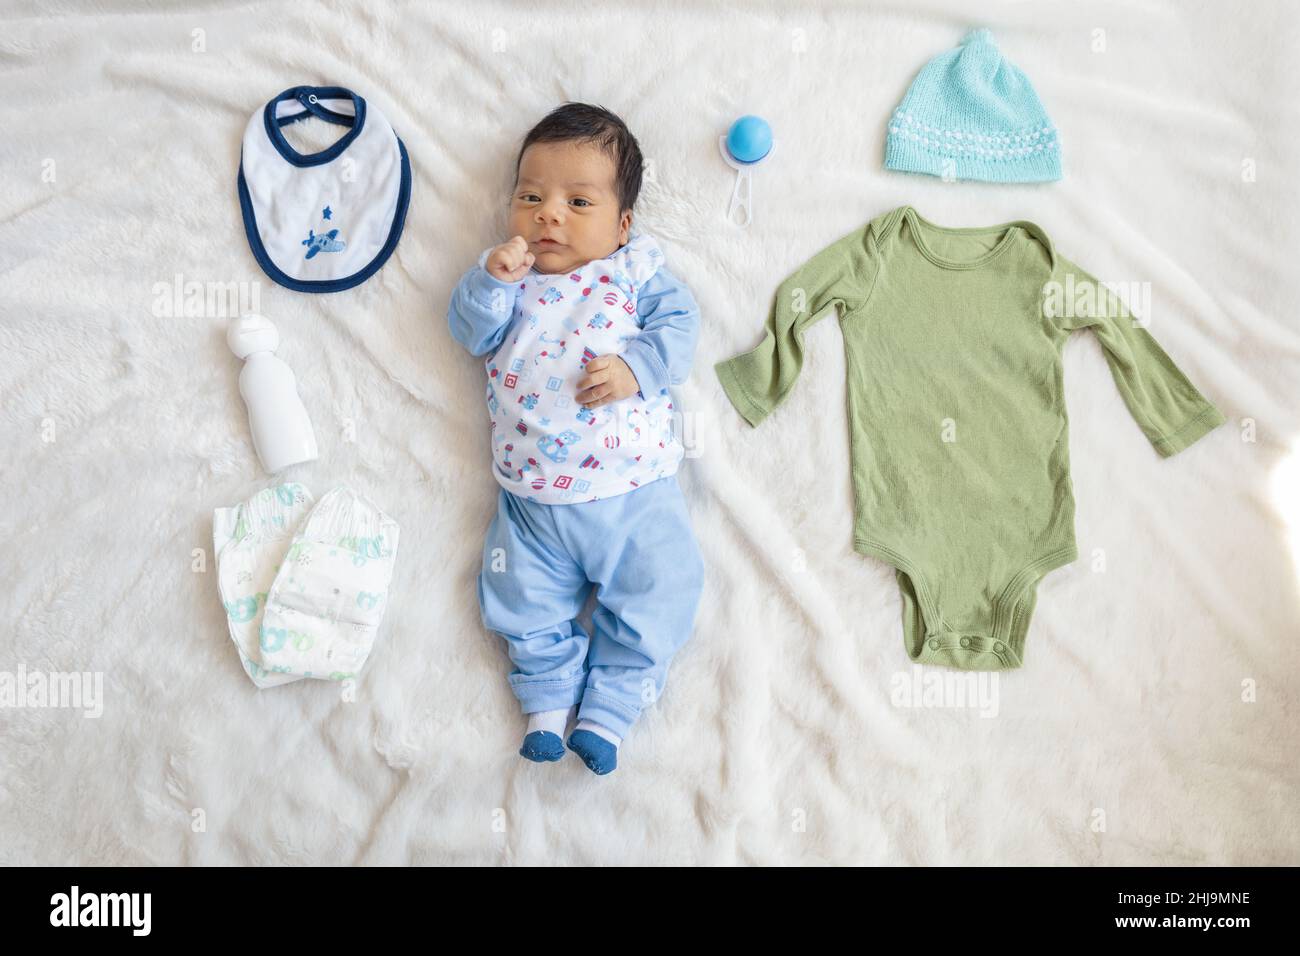 corpo intero di un bambino che giace accanto a abbigliamento per neonati  come cappello, pettorina, tuta